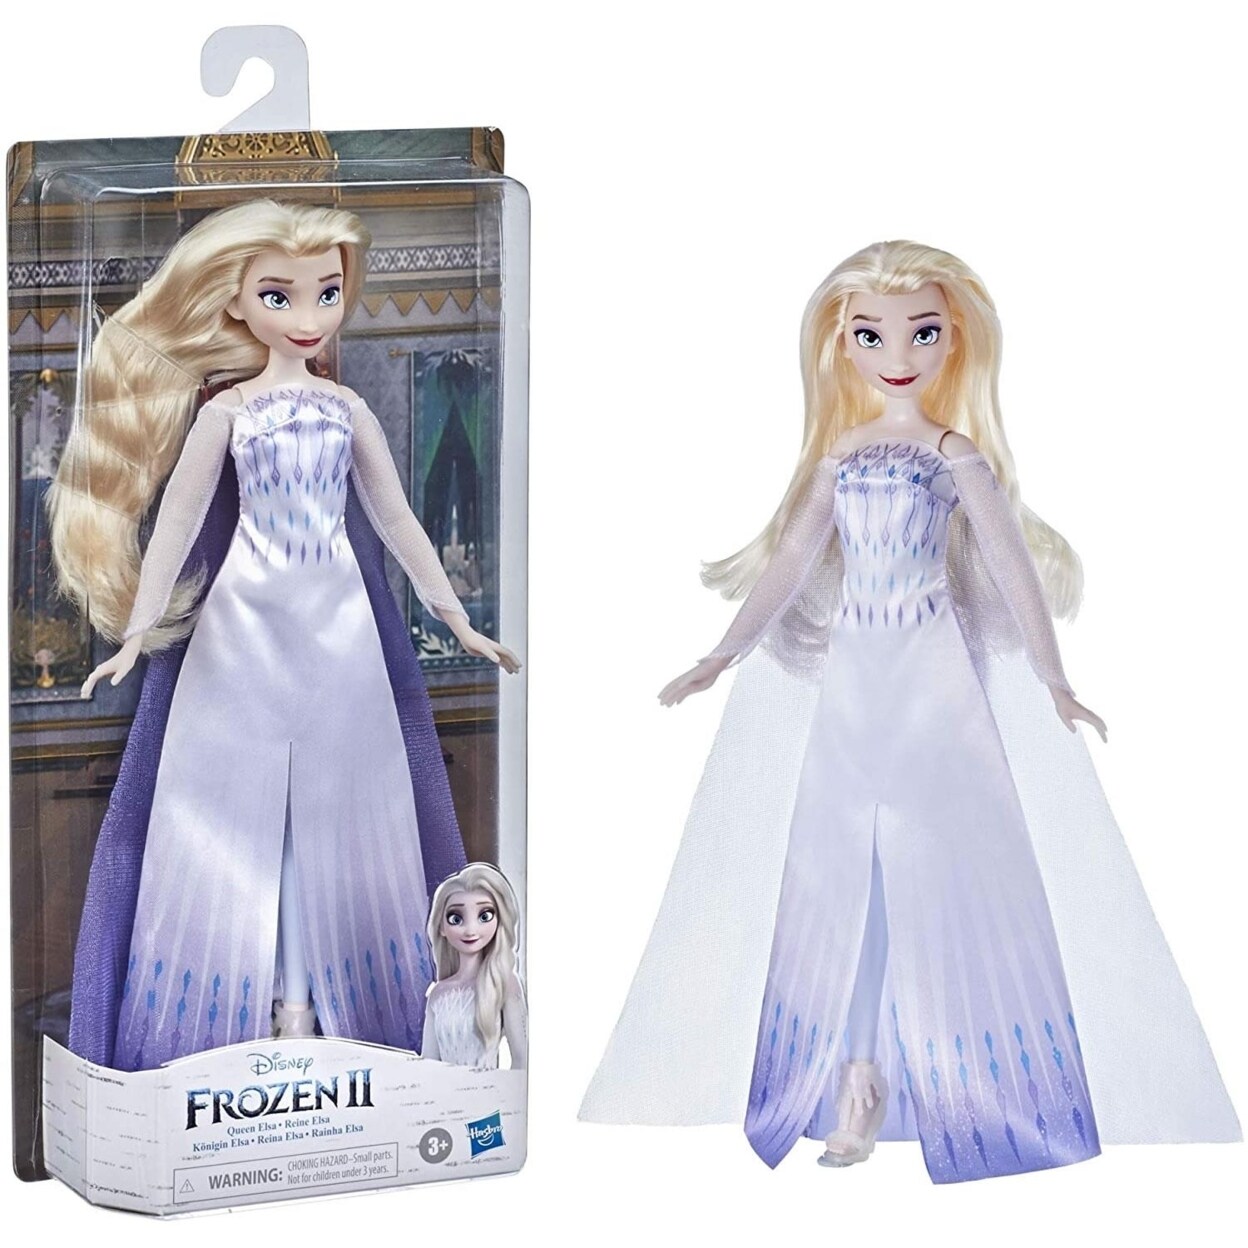 Tutu Dress - Elsa Inspired Dress & Frozen Family Costumes